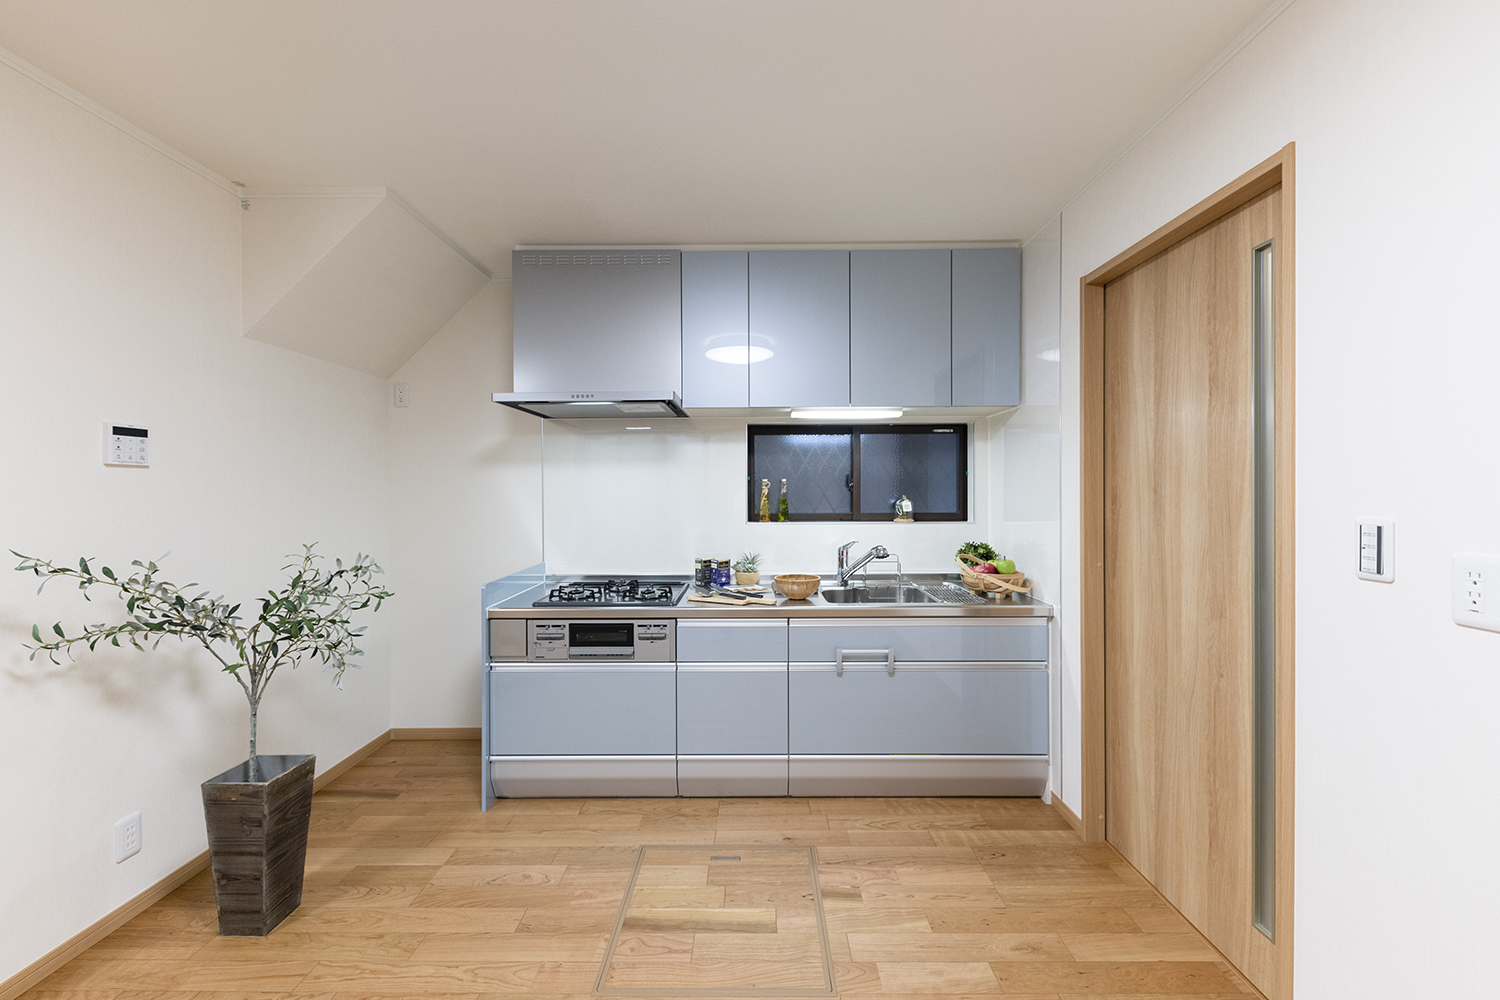 爽やかなブルーのキッチン扉の清潔感溢れるキッチンスペース。